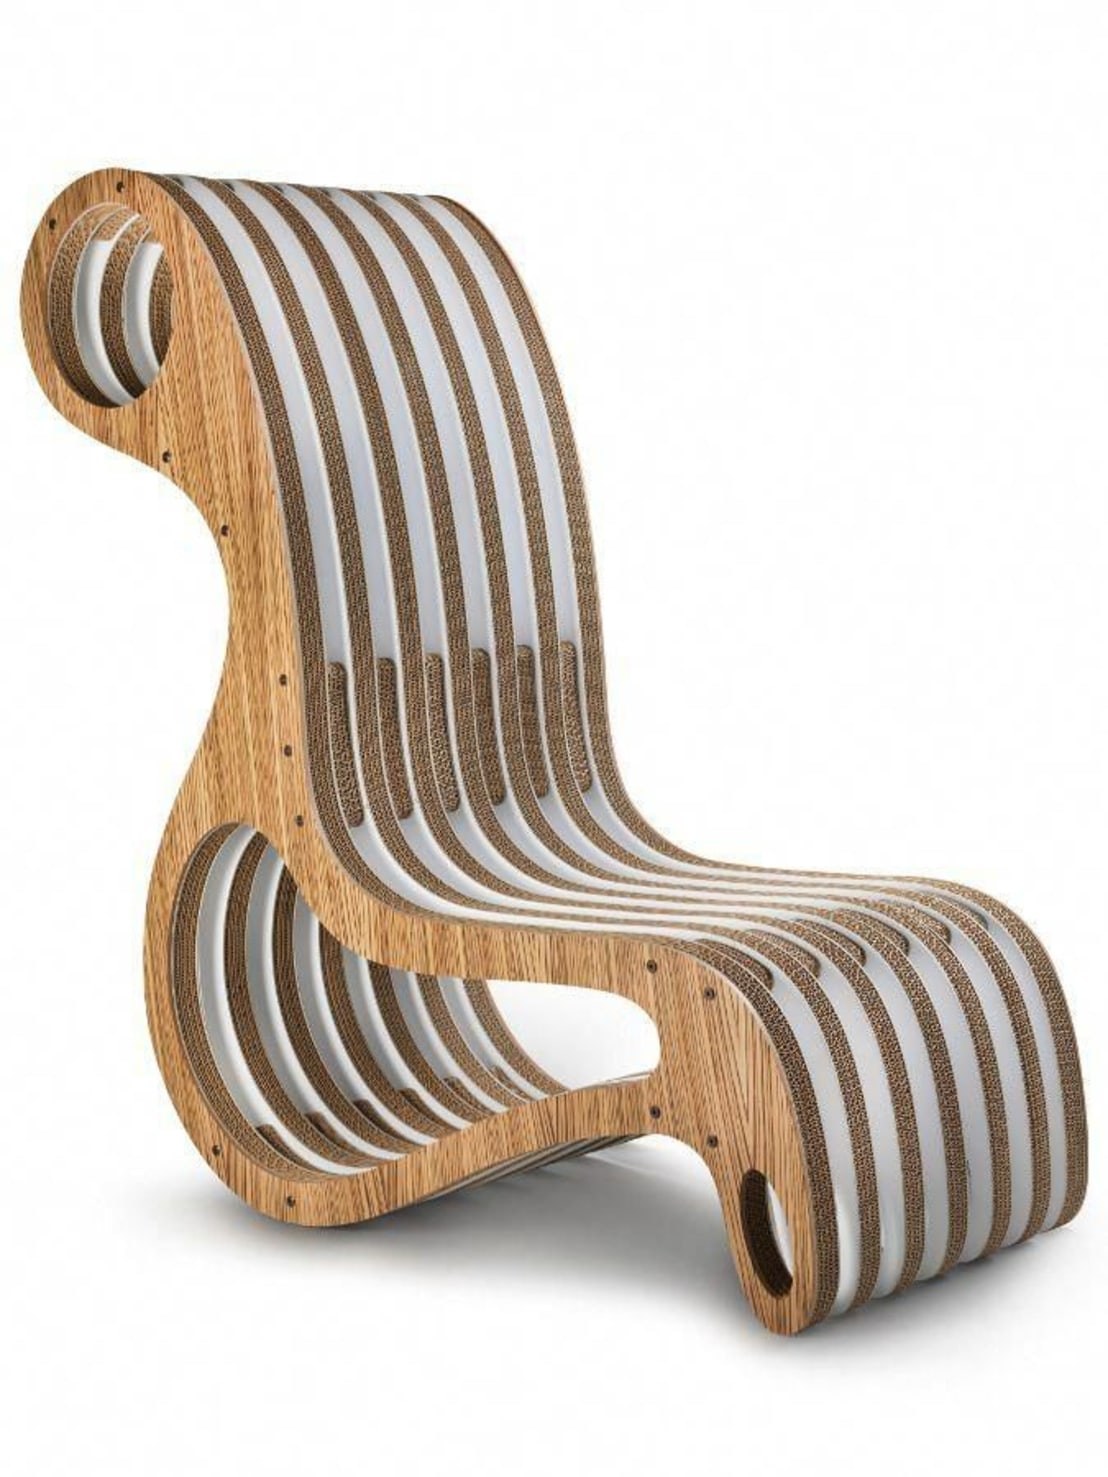 Кресло гнутое. Кресло параметрическое Параметрика. Кресло Вагнер ЭКОДИЗАЙН. Параметрическая мебель из фанеры кресло. Мебель из гнуто клиенной фанеры.